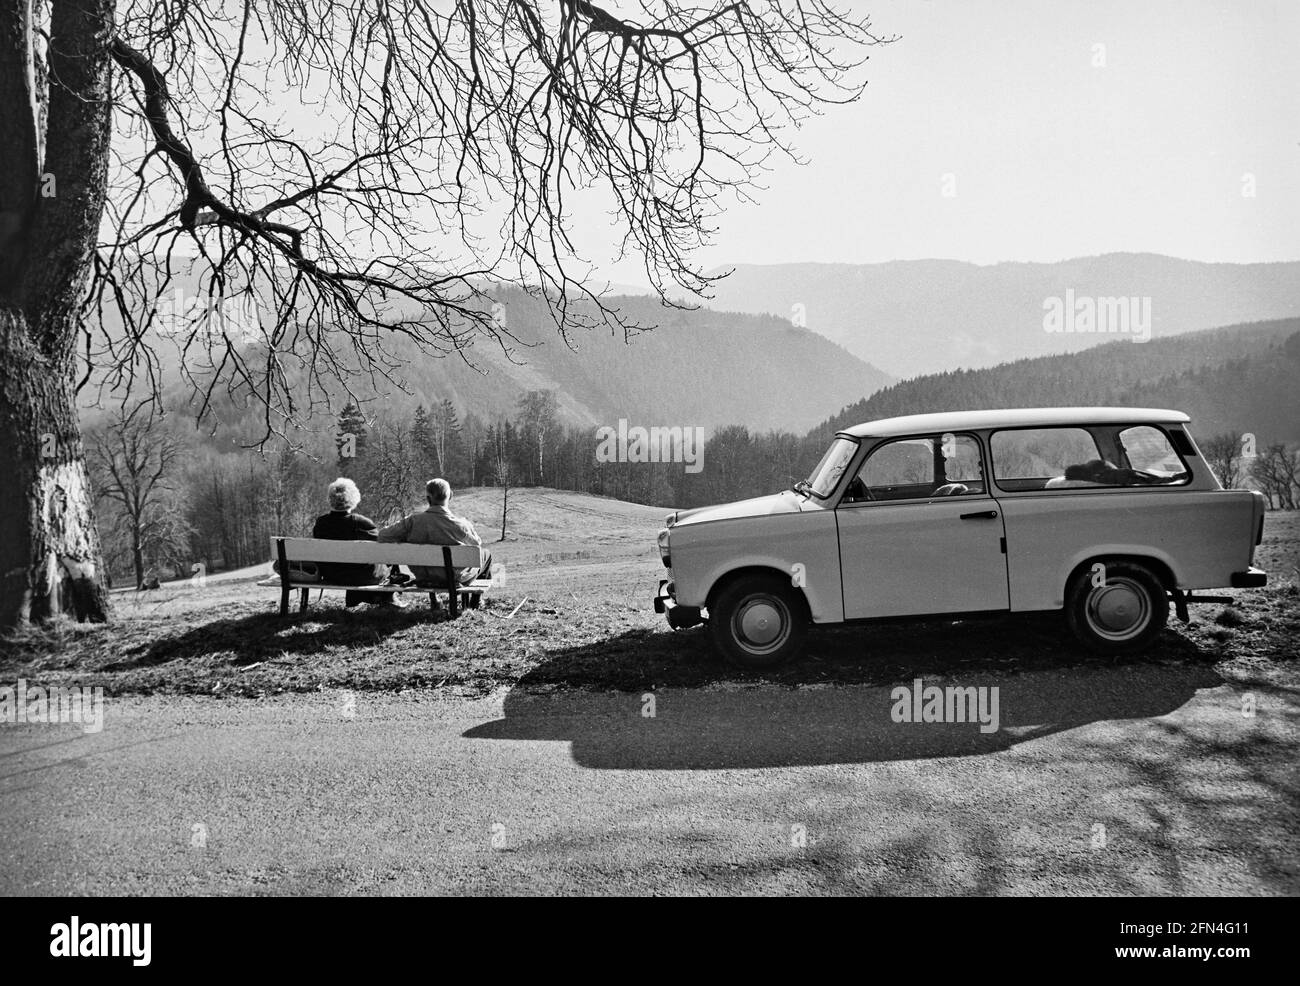 Un couple bénéficie d'une vue sur les collines boisées de la forêt de Thuringe sur un banc. Le Trabant variant se tient au talon. 03.1990 - Christoph Keller Banque D'Images